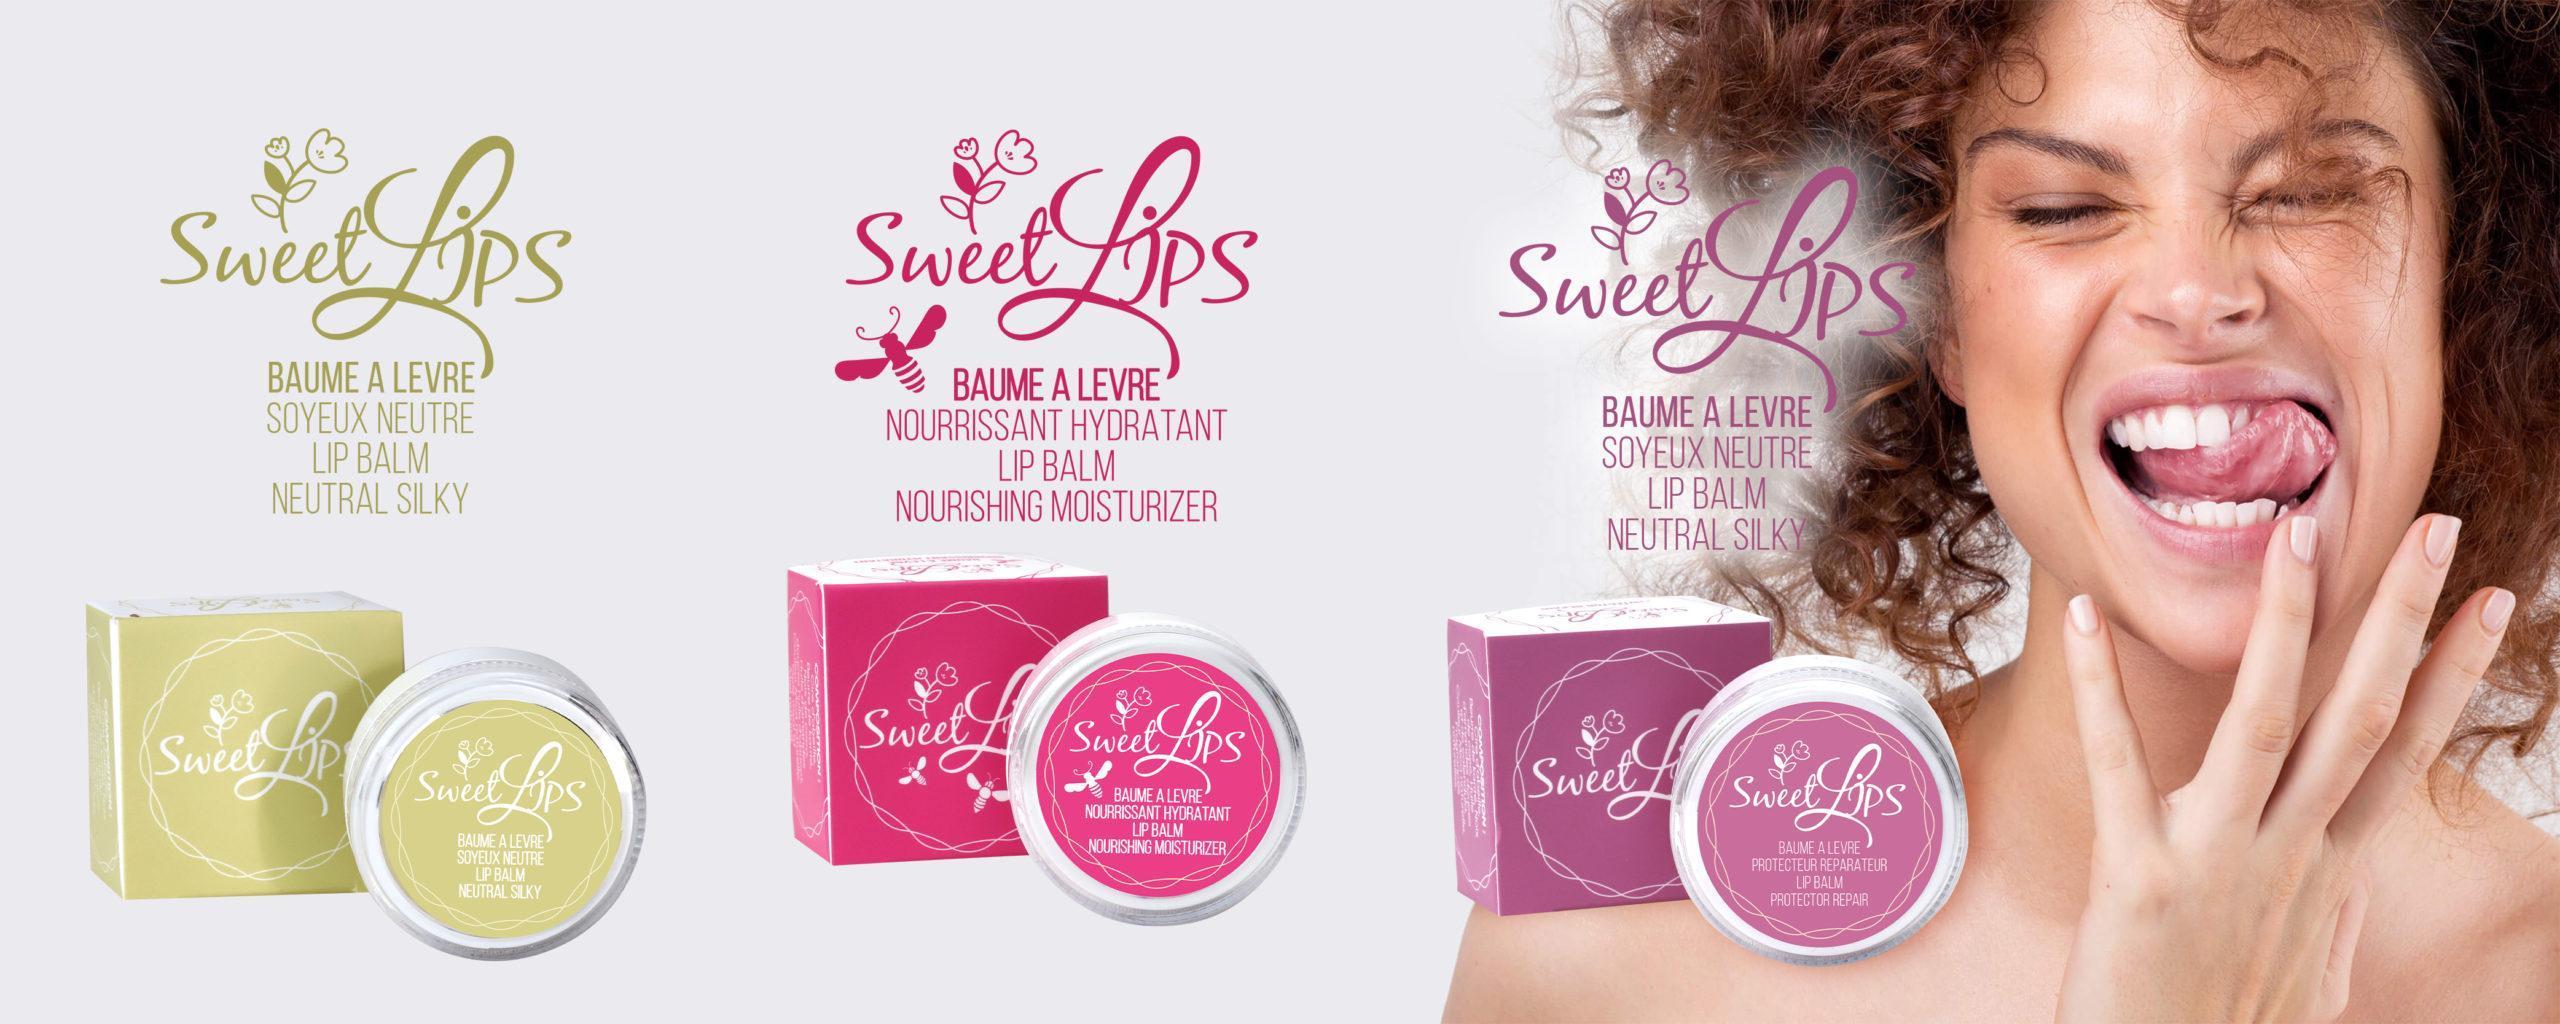 sweetlips - baume à lèvre - lip balm -gommage levres - soins lèvres - meilleur baume à levre en tunisie